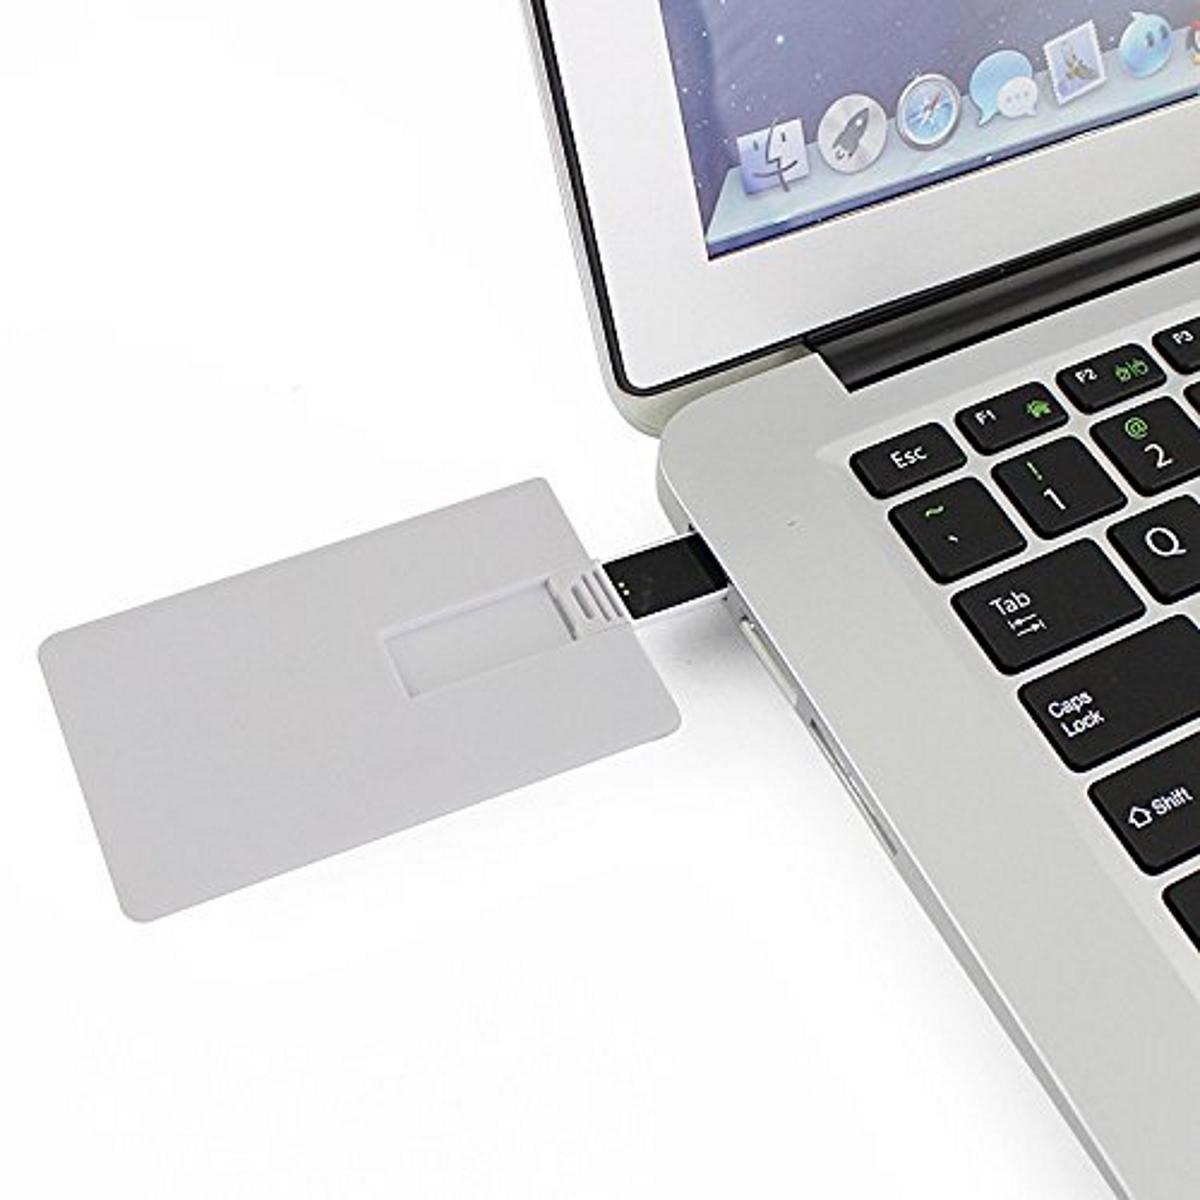 16 GB) ® (Weiss, Kreditkarte USB GERMANY USB-Stick